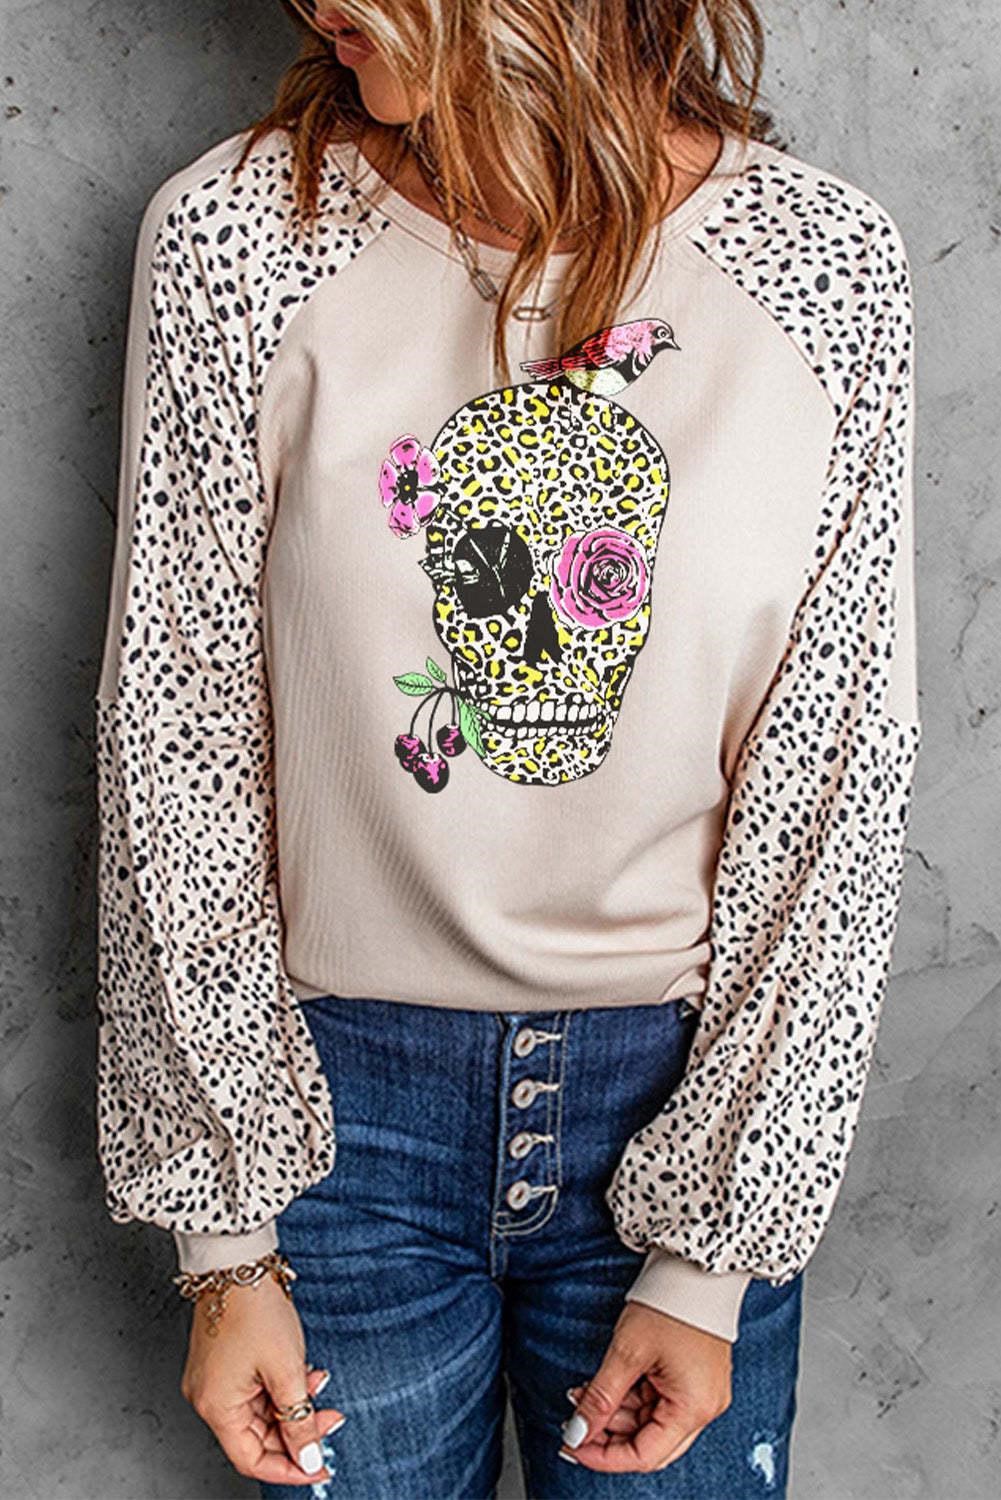 Women’s Skull Shirt Online Store- Evaless